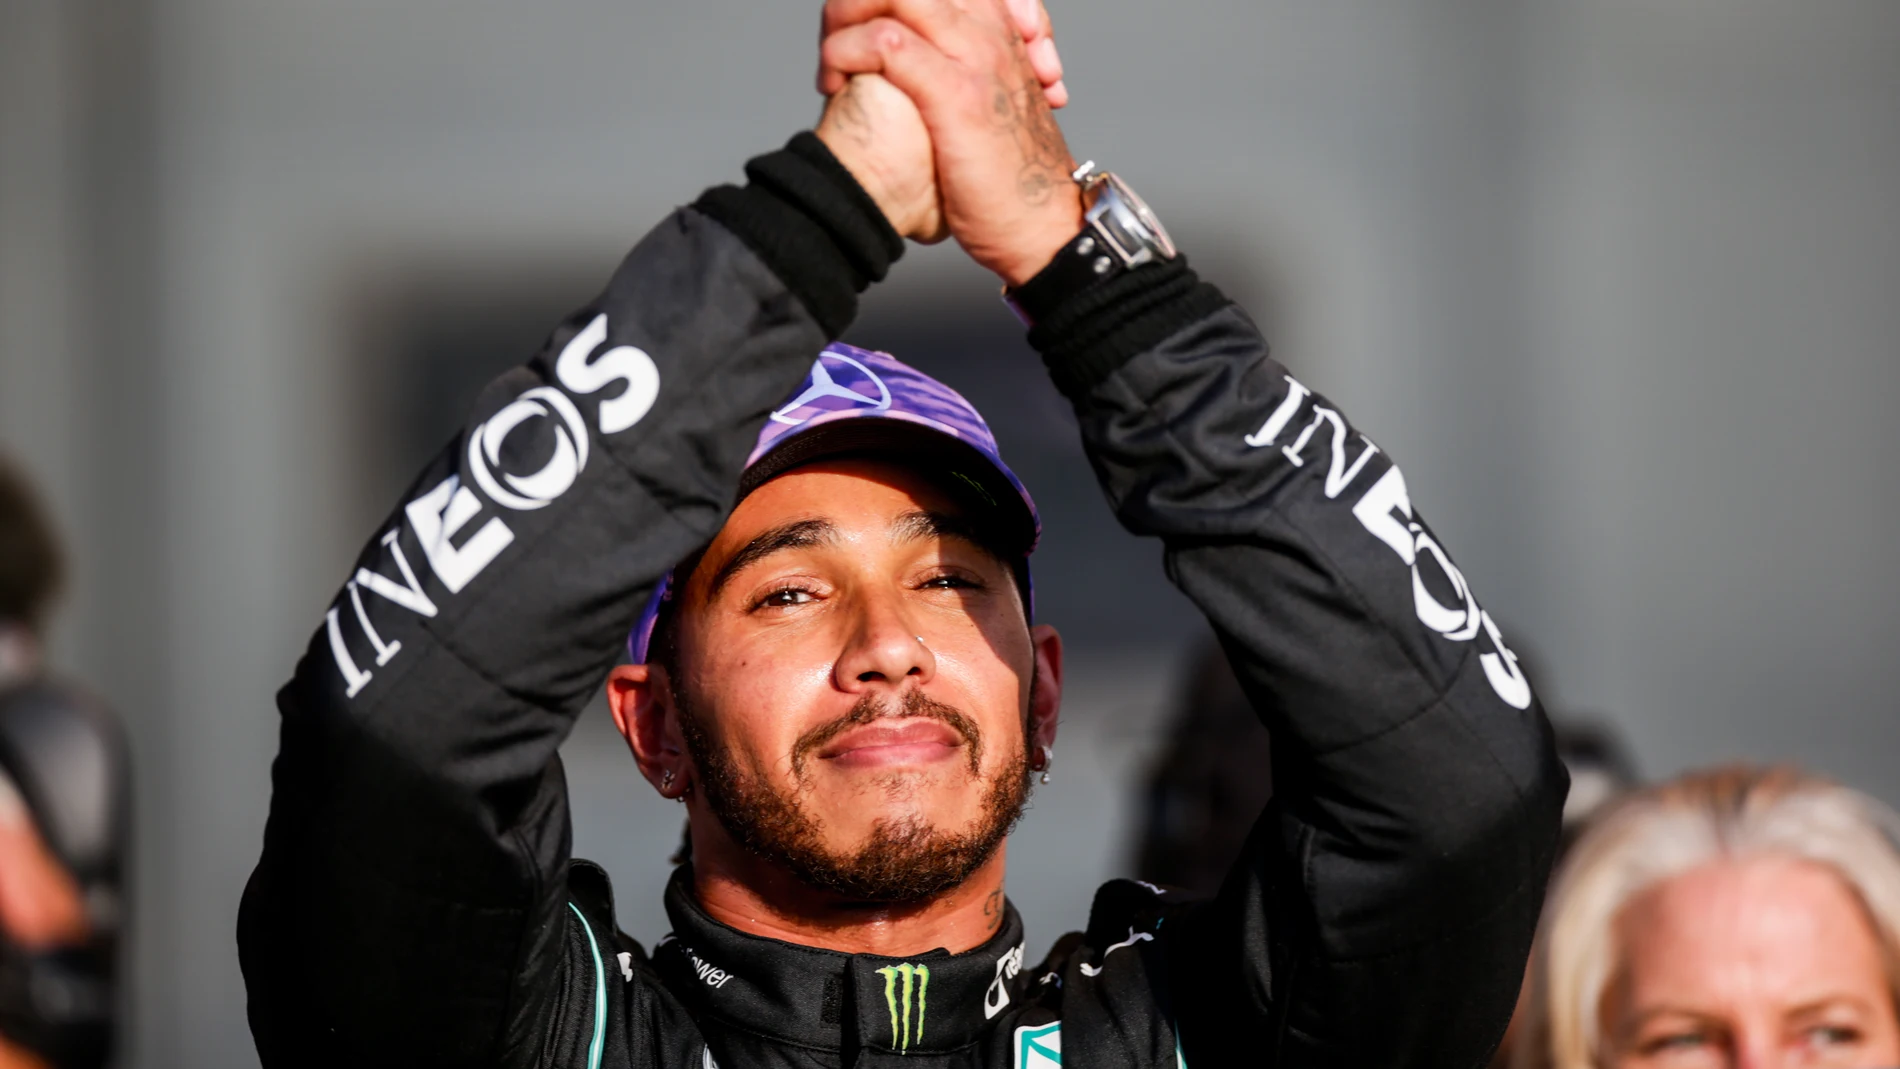 Clasificación de la carrera al sprint de Silverstone: Hamilton gana la partida a Verstappen